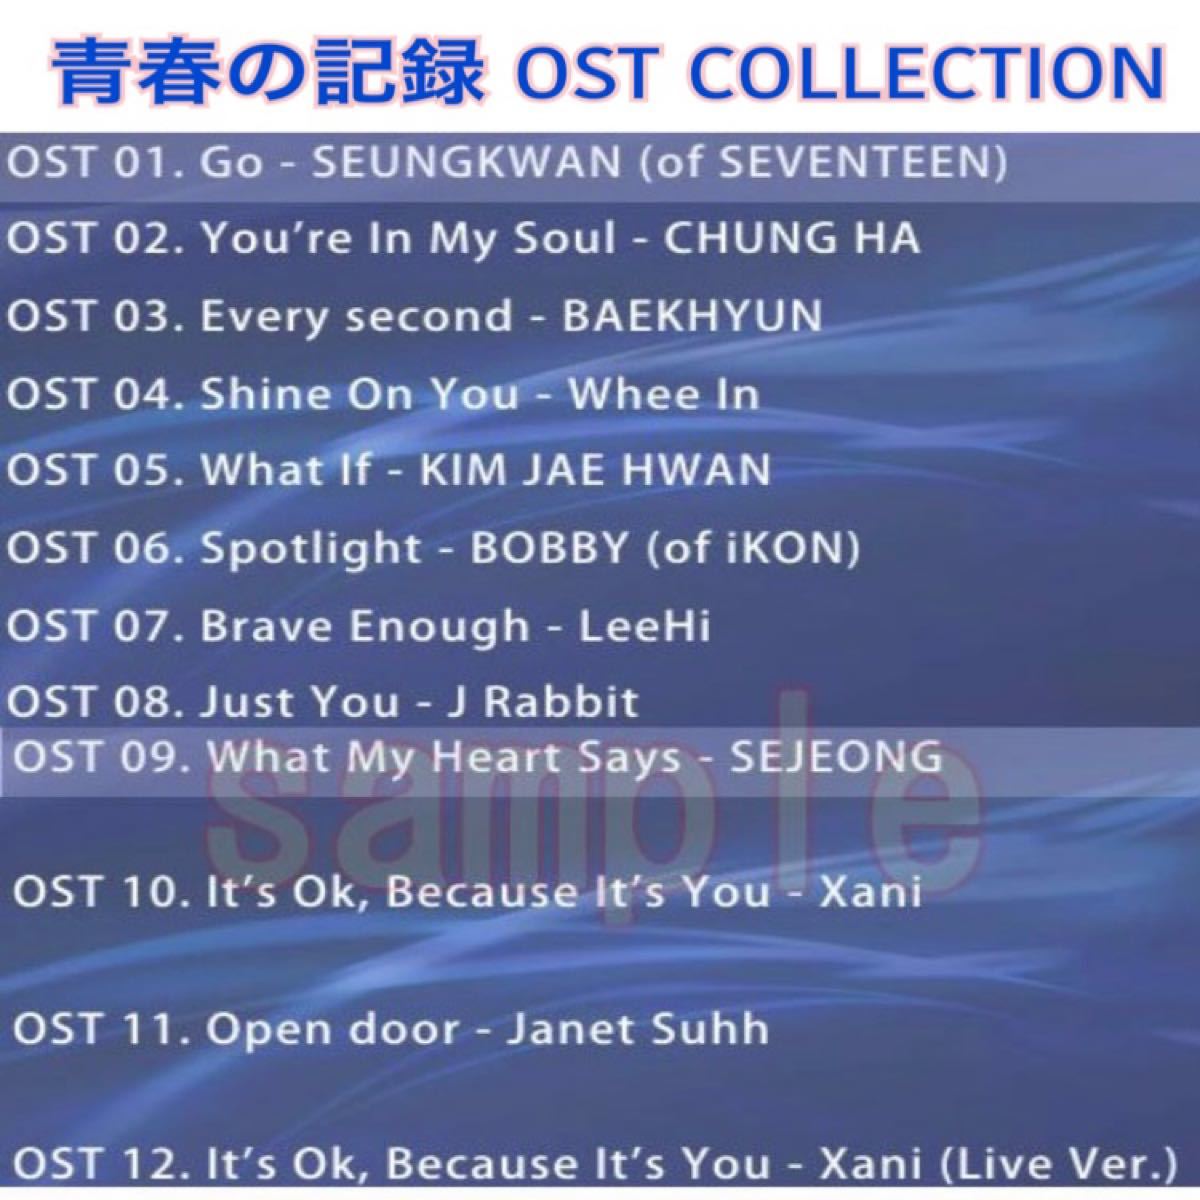 パク・ボゴム OST COLLECTION <DVD>      【雲が描いた月明かり】【ボーイフレンド】  【青春の記録】   